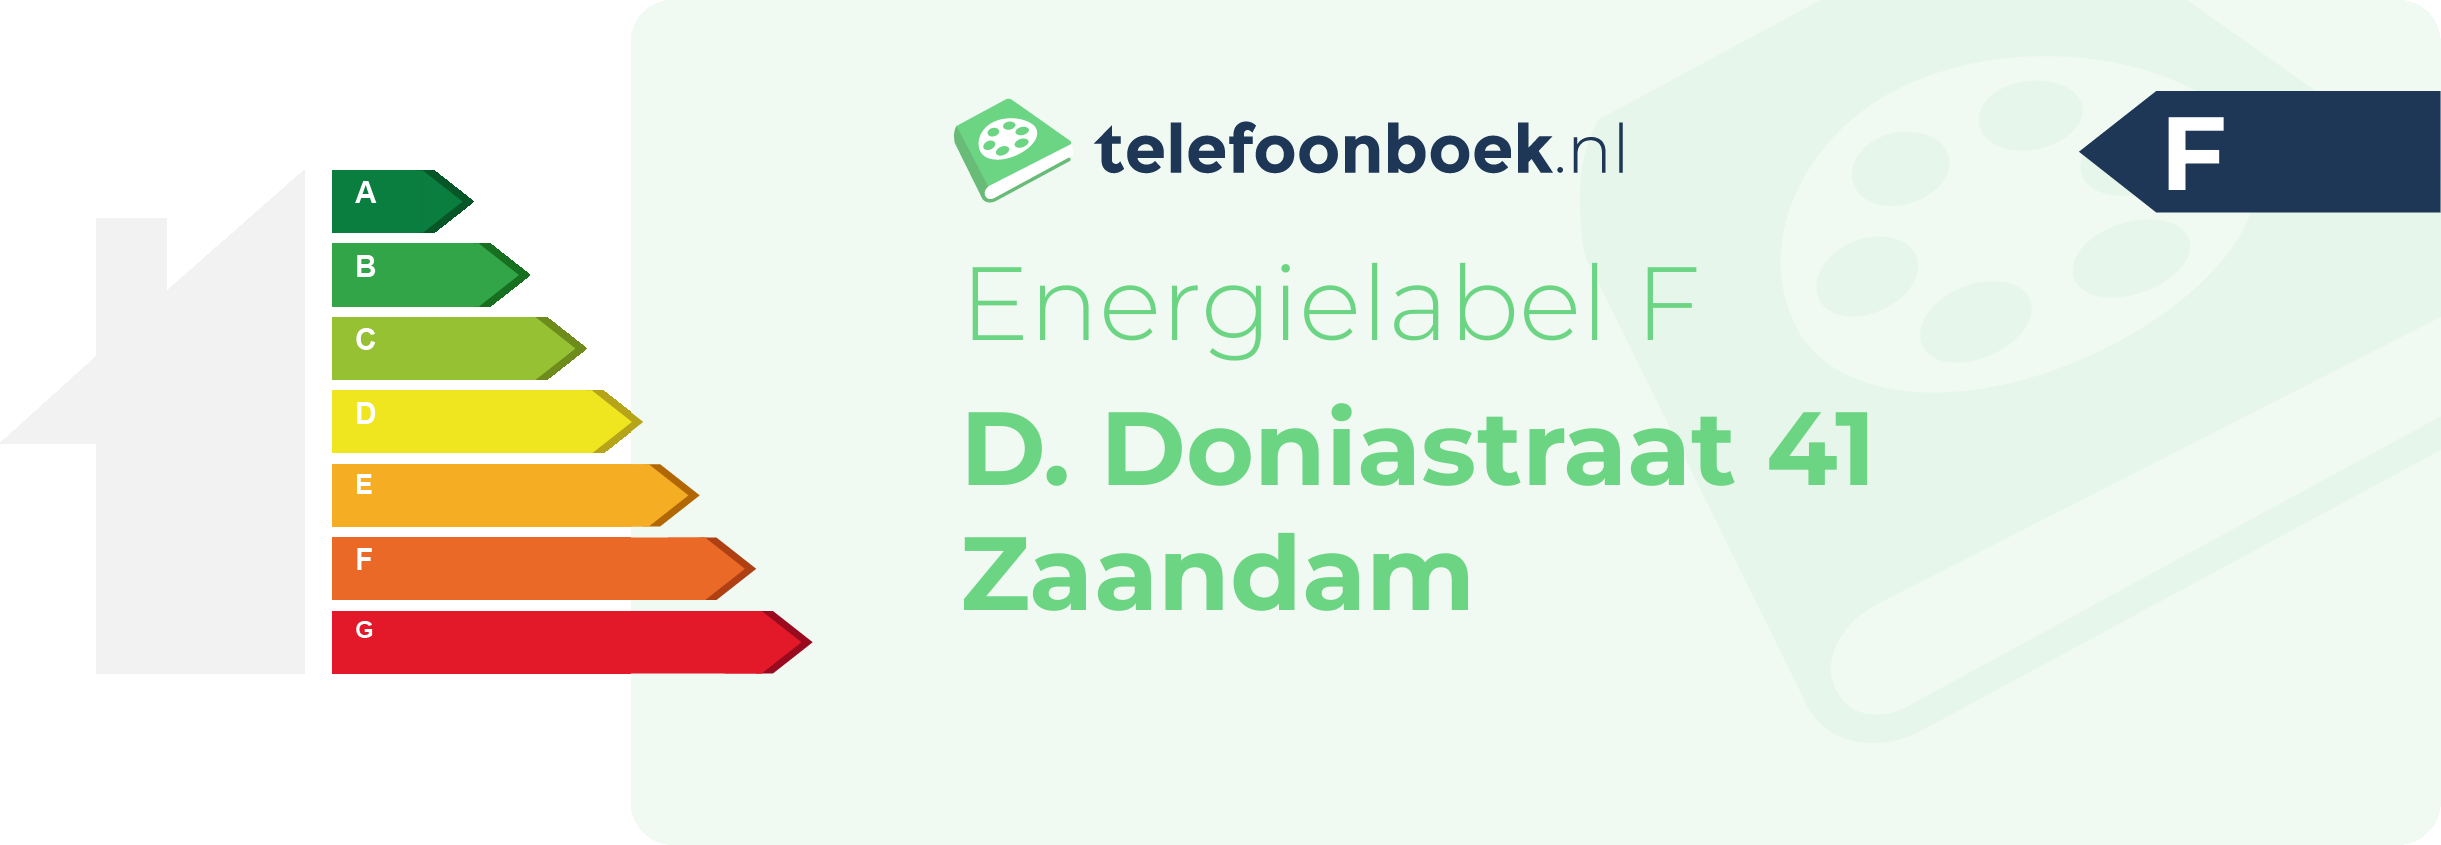 Energielabel D. Doniastraat 41 Zaandam